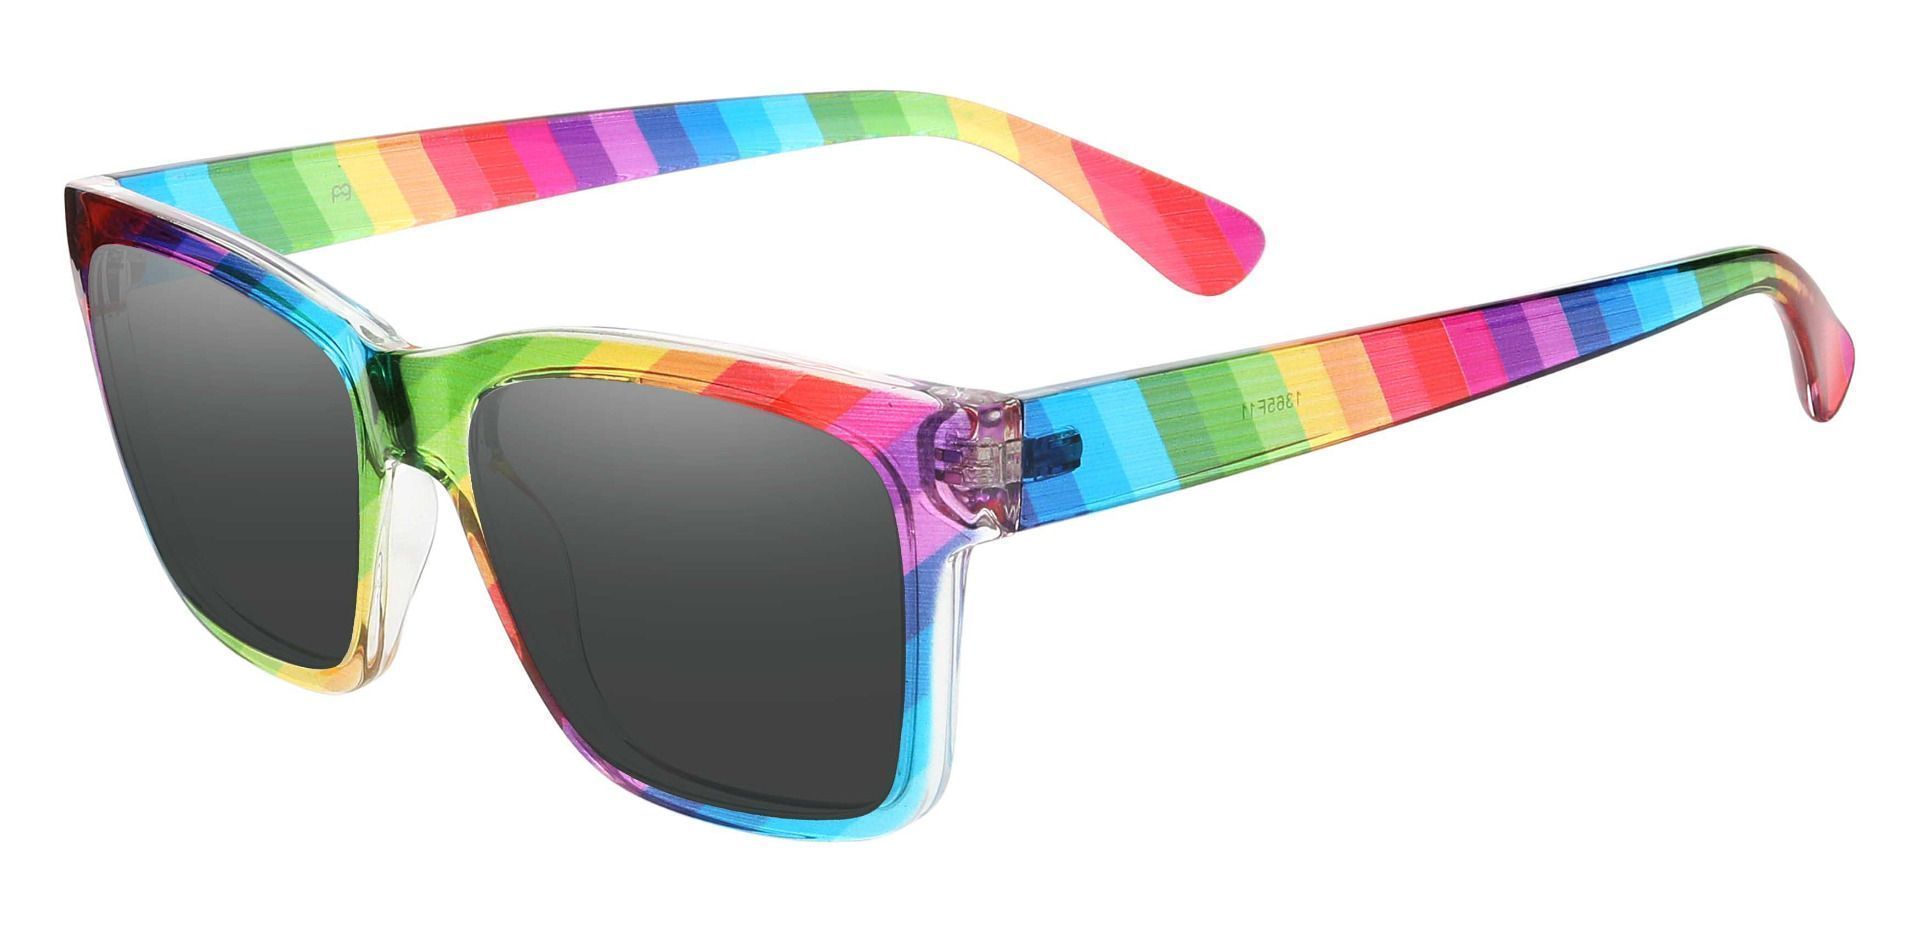 Hatton Square Prescription Sunglasses - Multi Color Frame With Gray Lenses